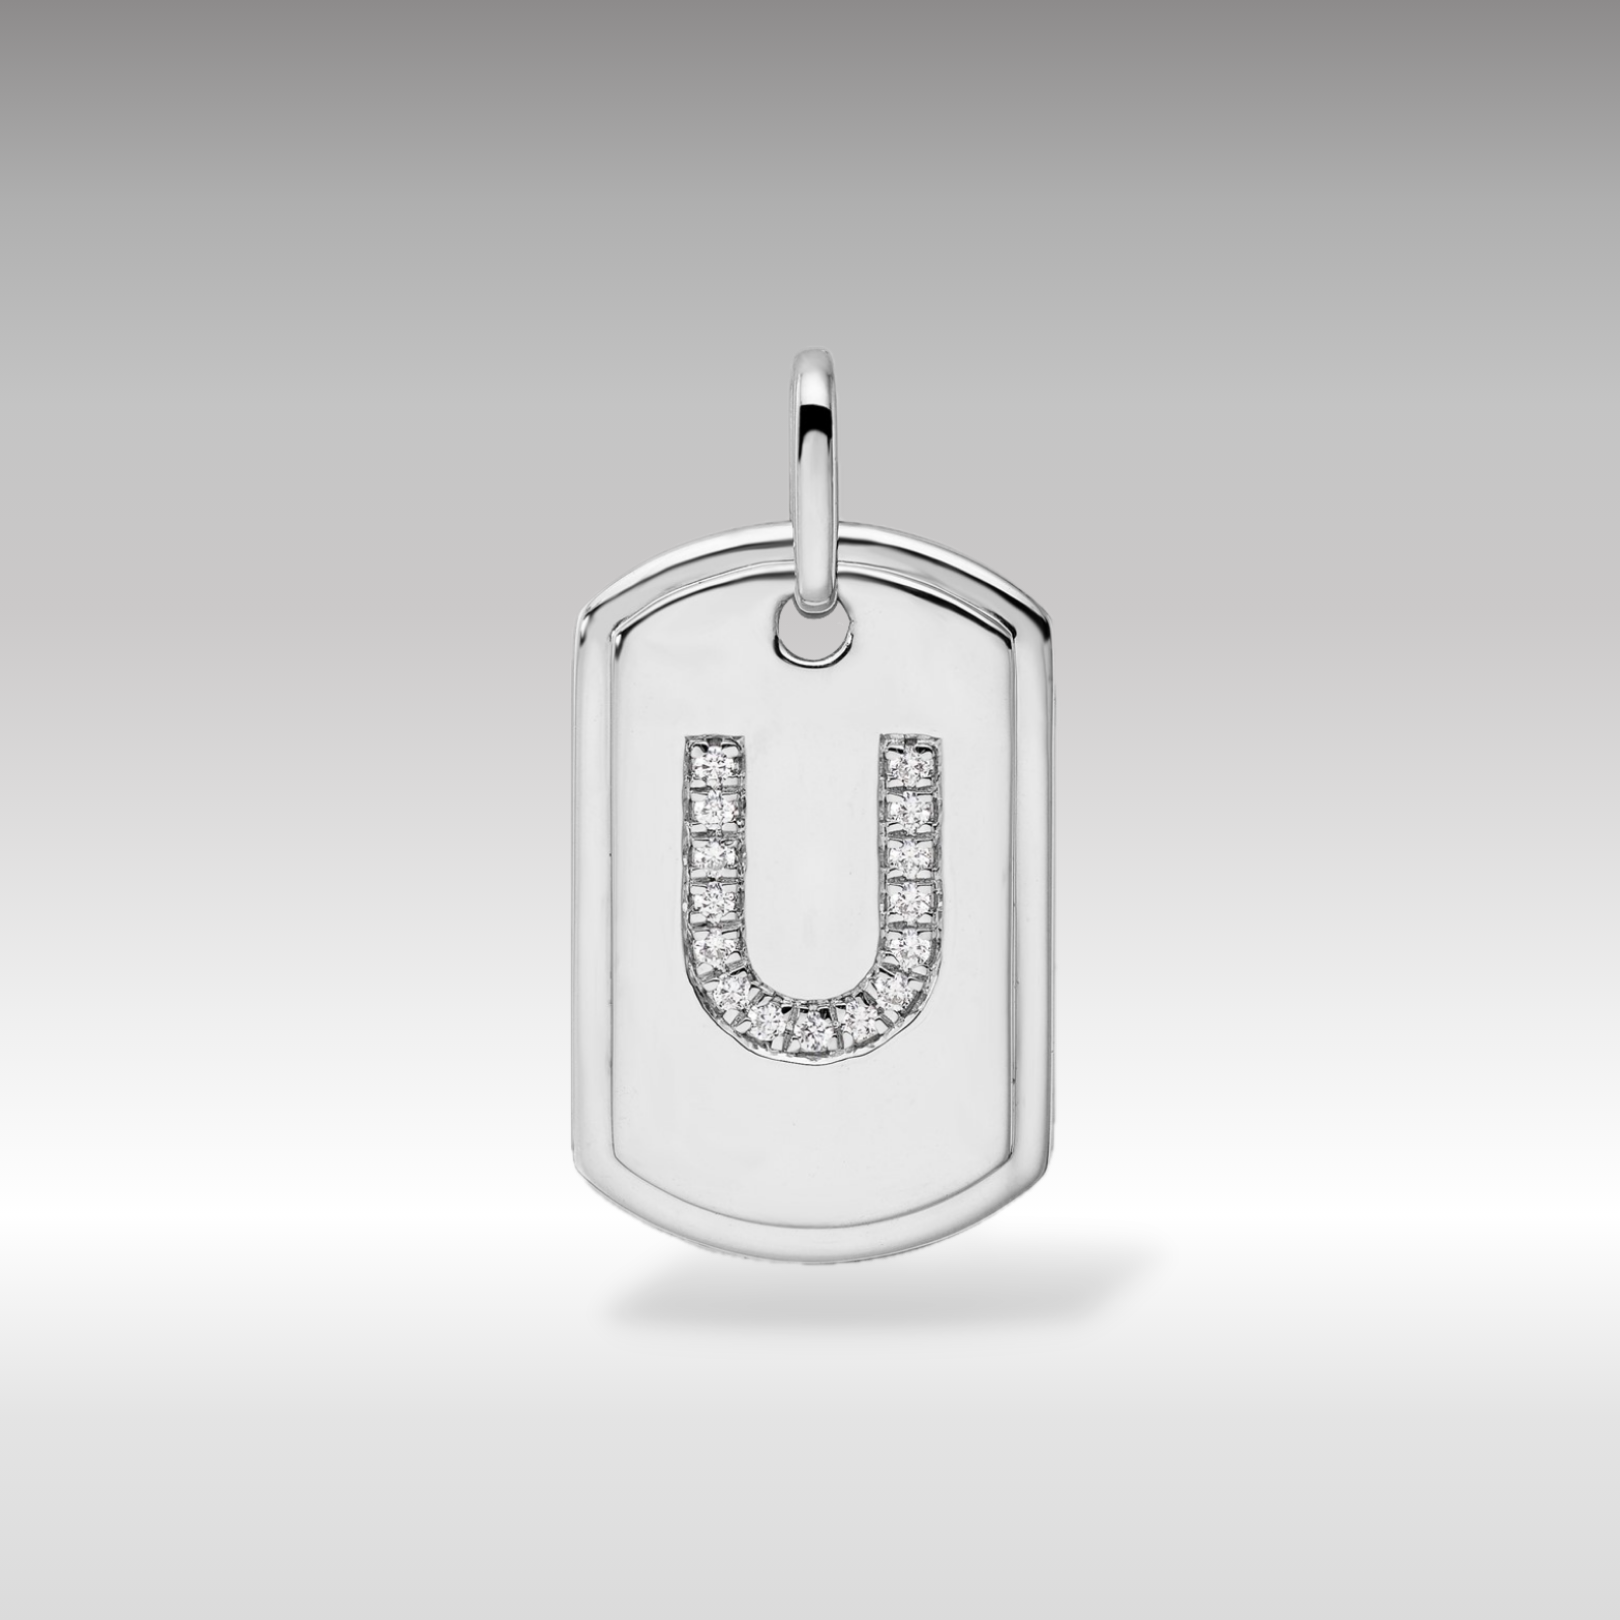 14K White Gold Initial "U" Dog Tag With Genuine Diamonds - Charlie & Co. Jewelry